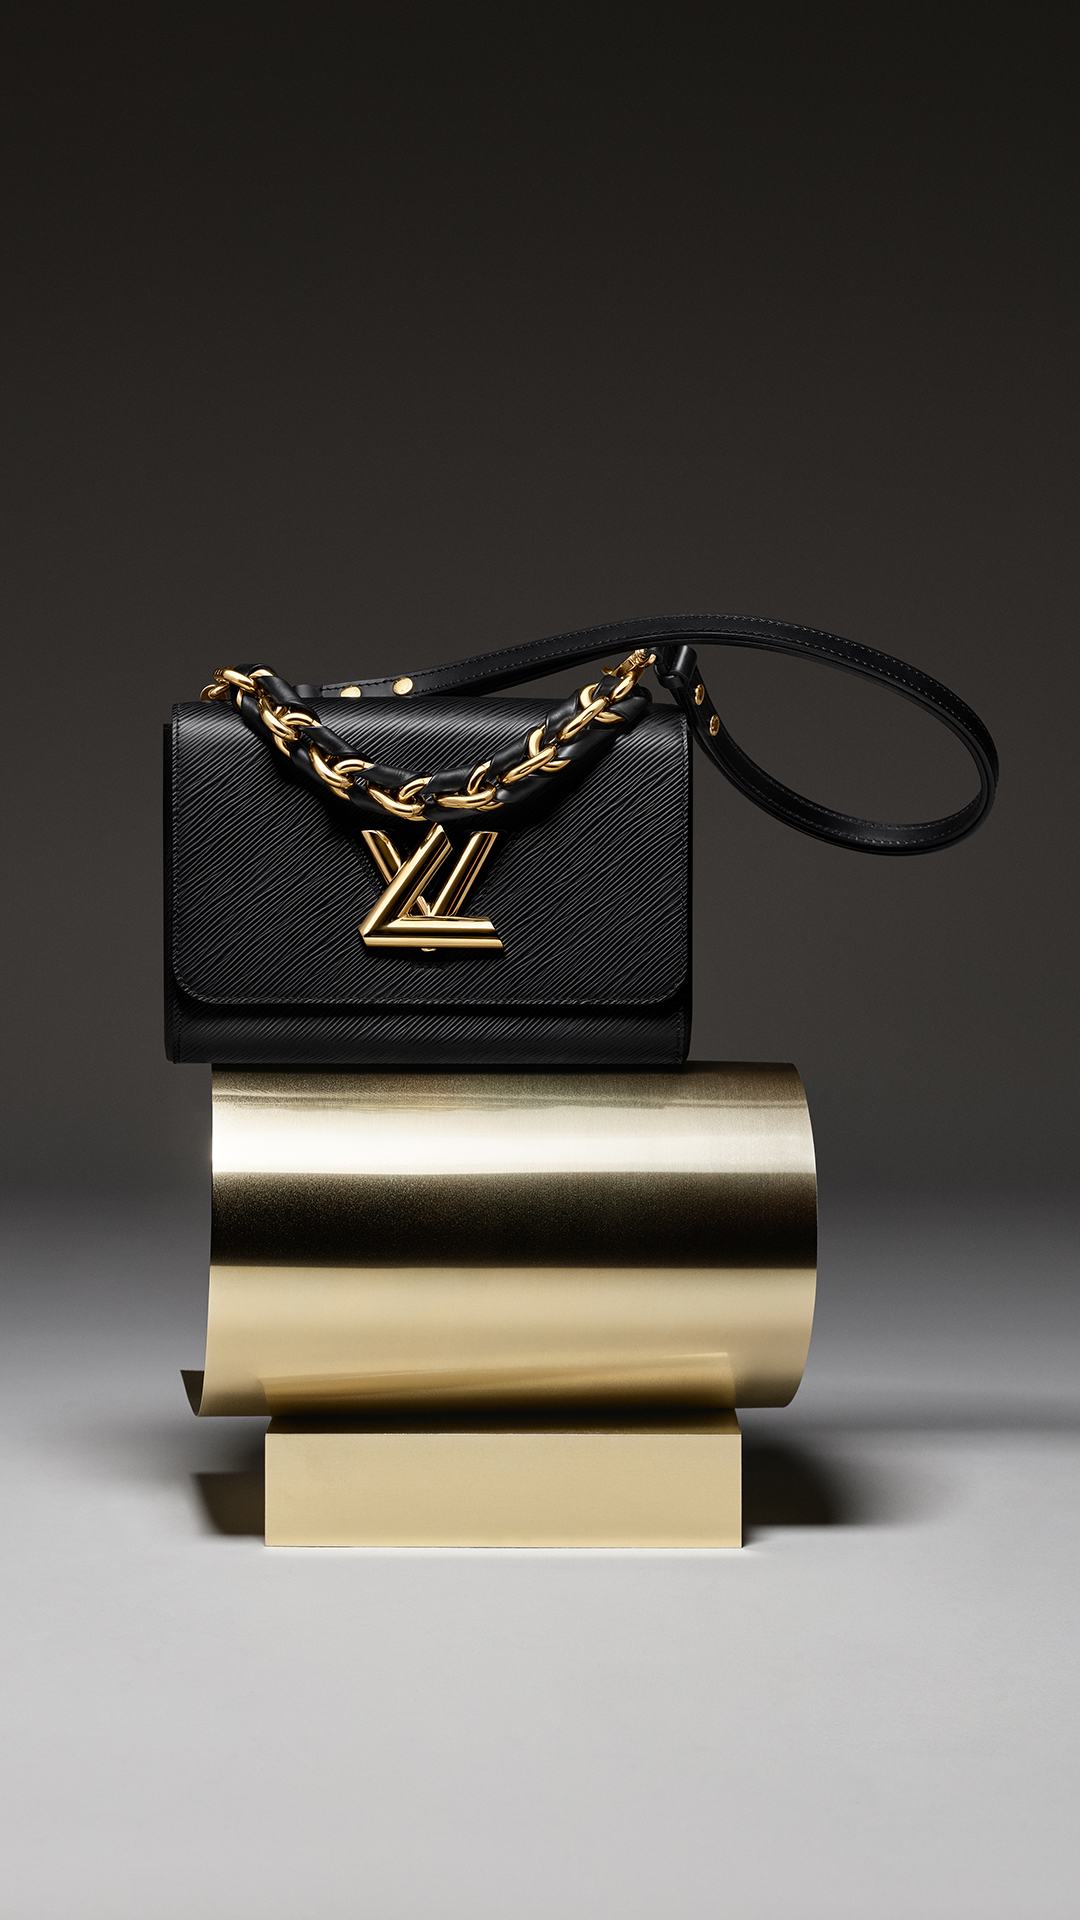 Túi LV Twist màu đen nhà Louis Vuitton